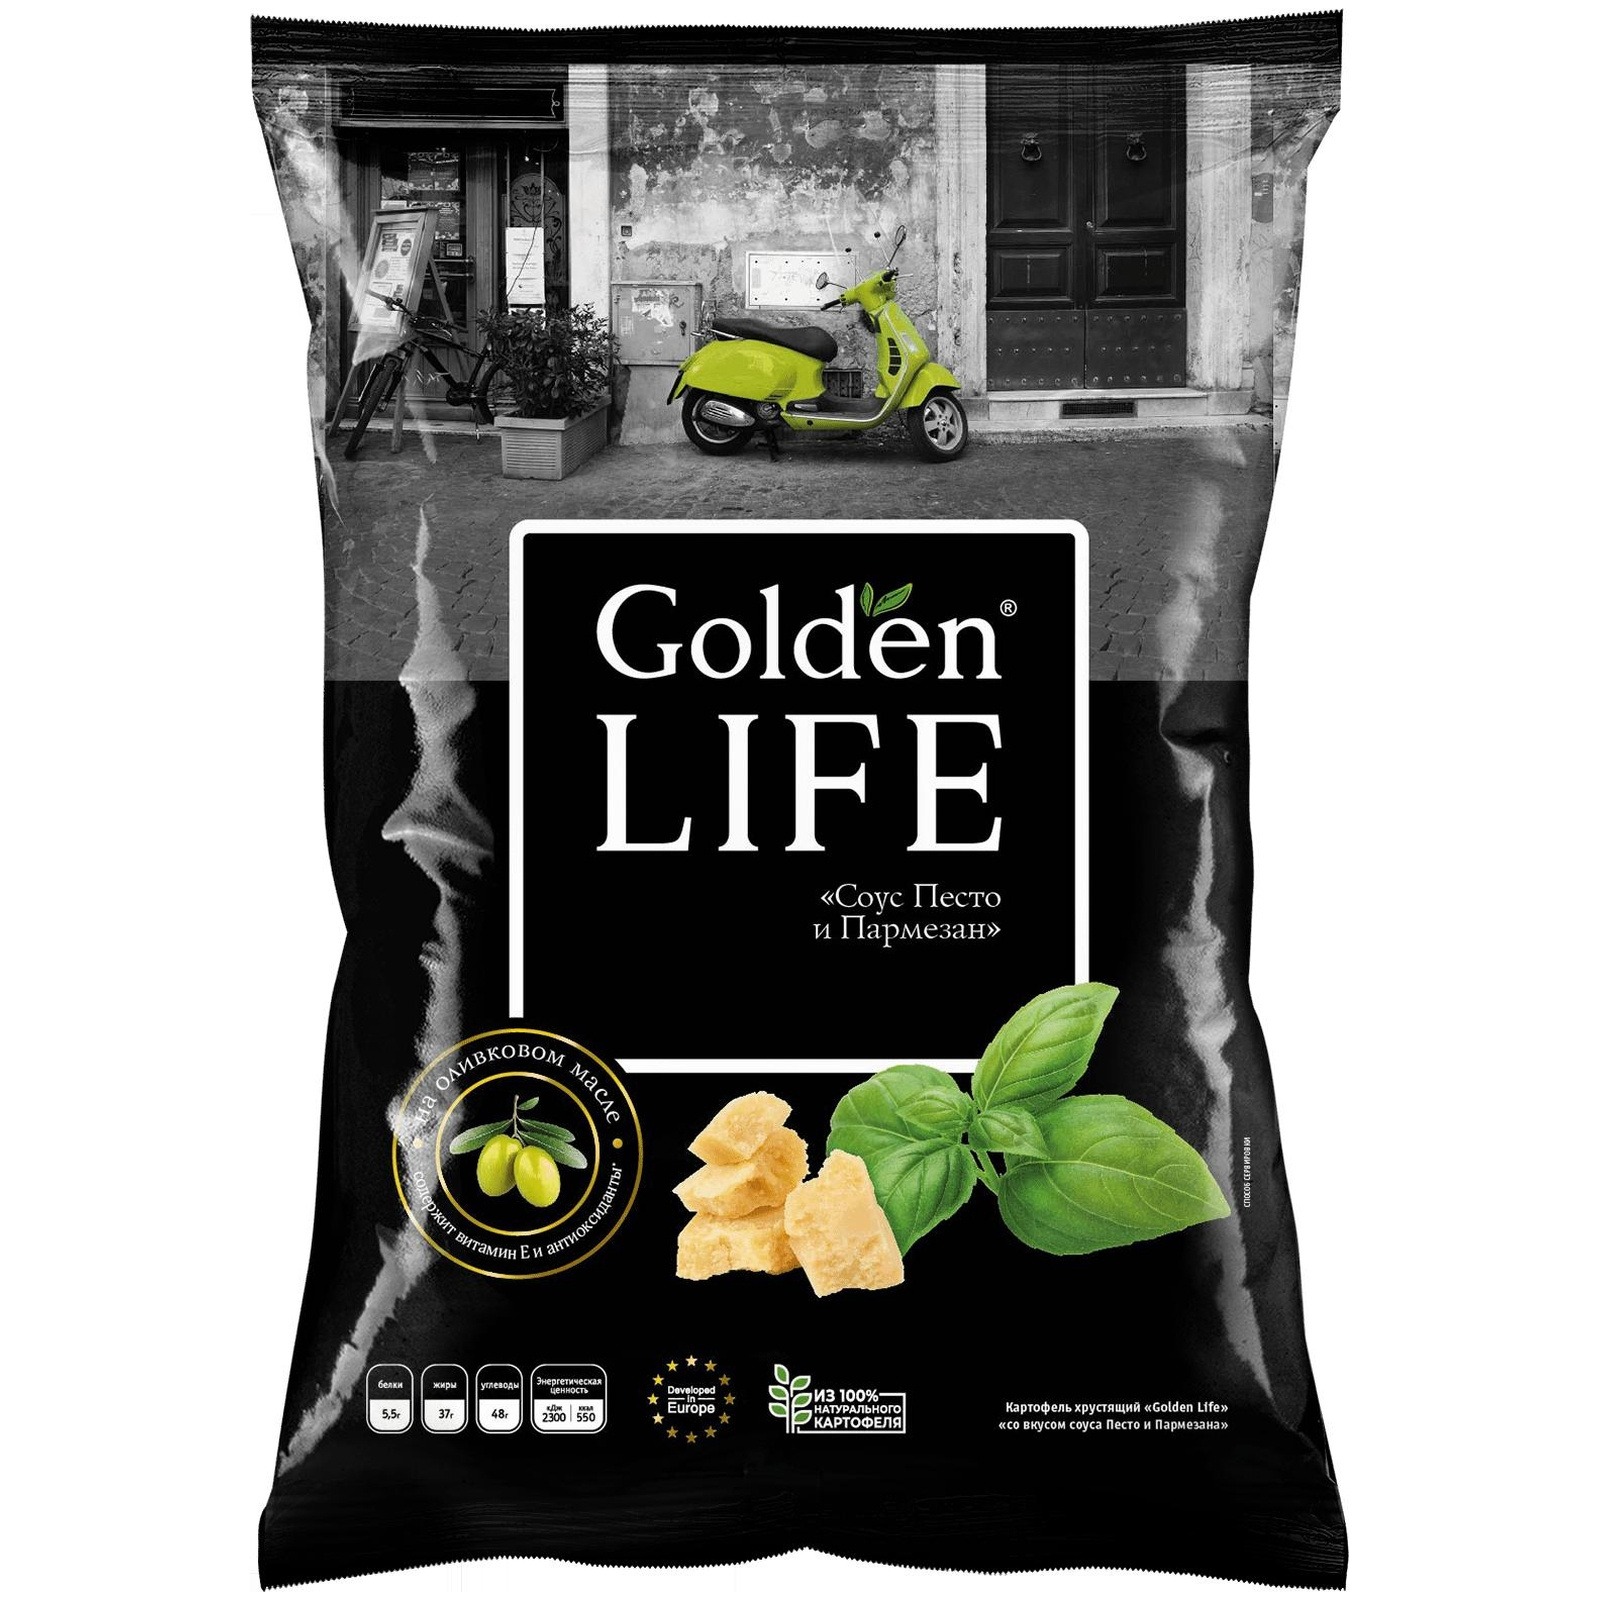 Чипсы Golden Life картофельные песто и пармезан, 90 г чипсы dr snack картофельные паприка 160 г